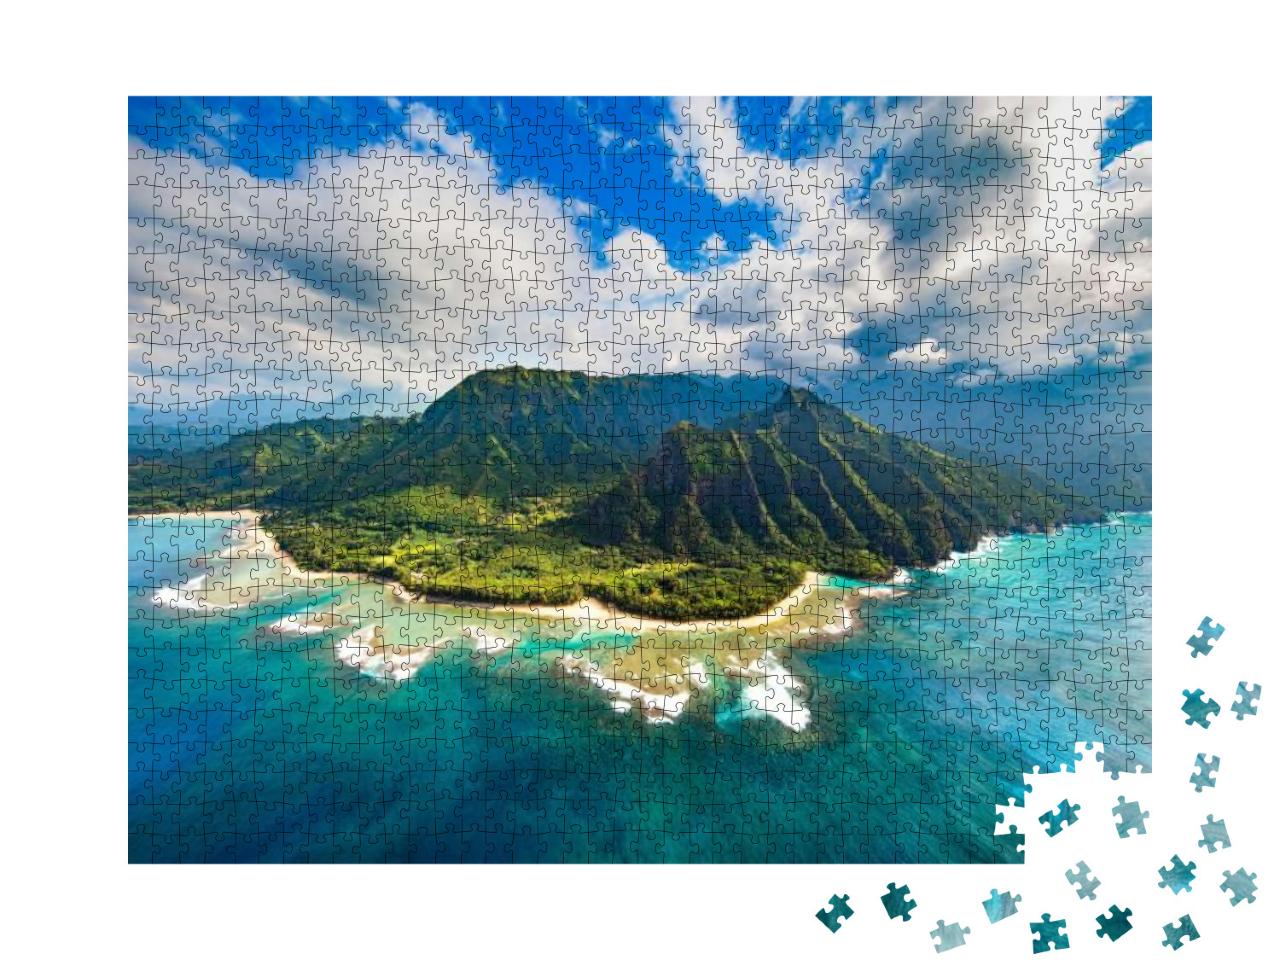 Na Pali Coast, Kauai... Jigsaw Puzzle with 1000 pieces